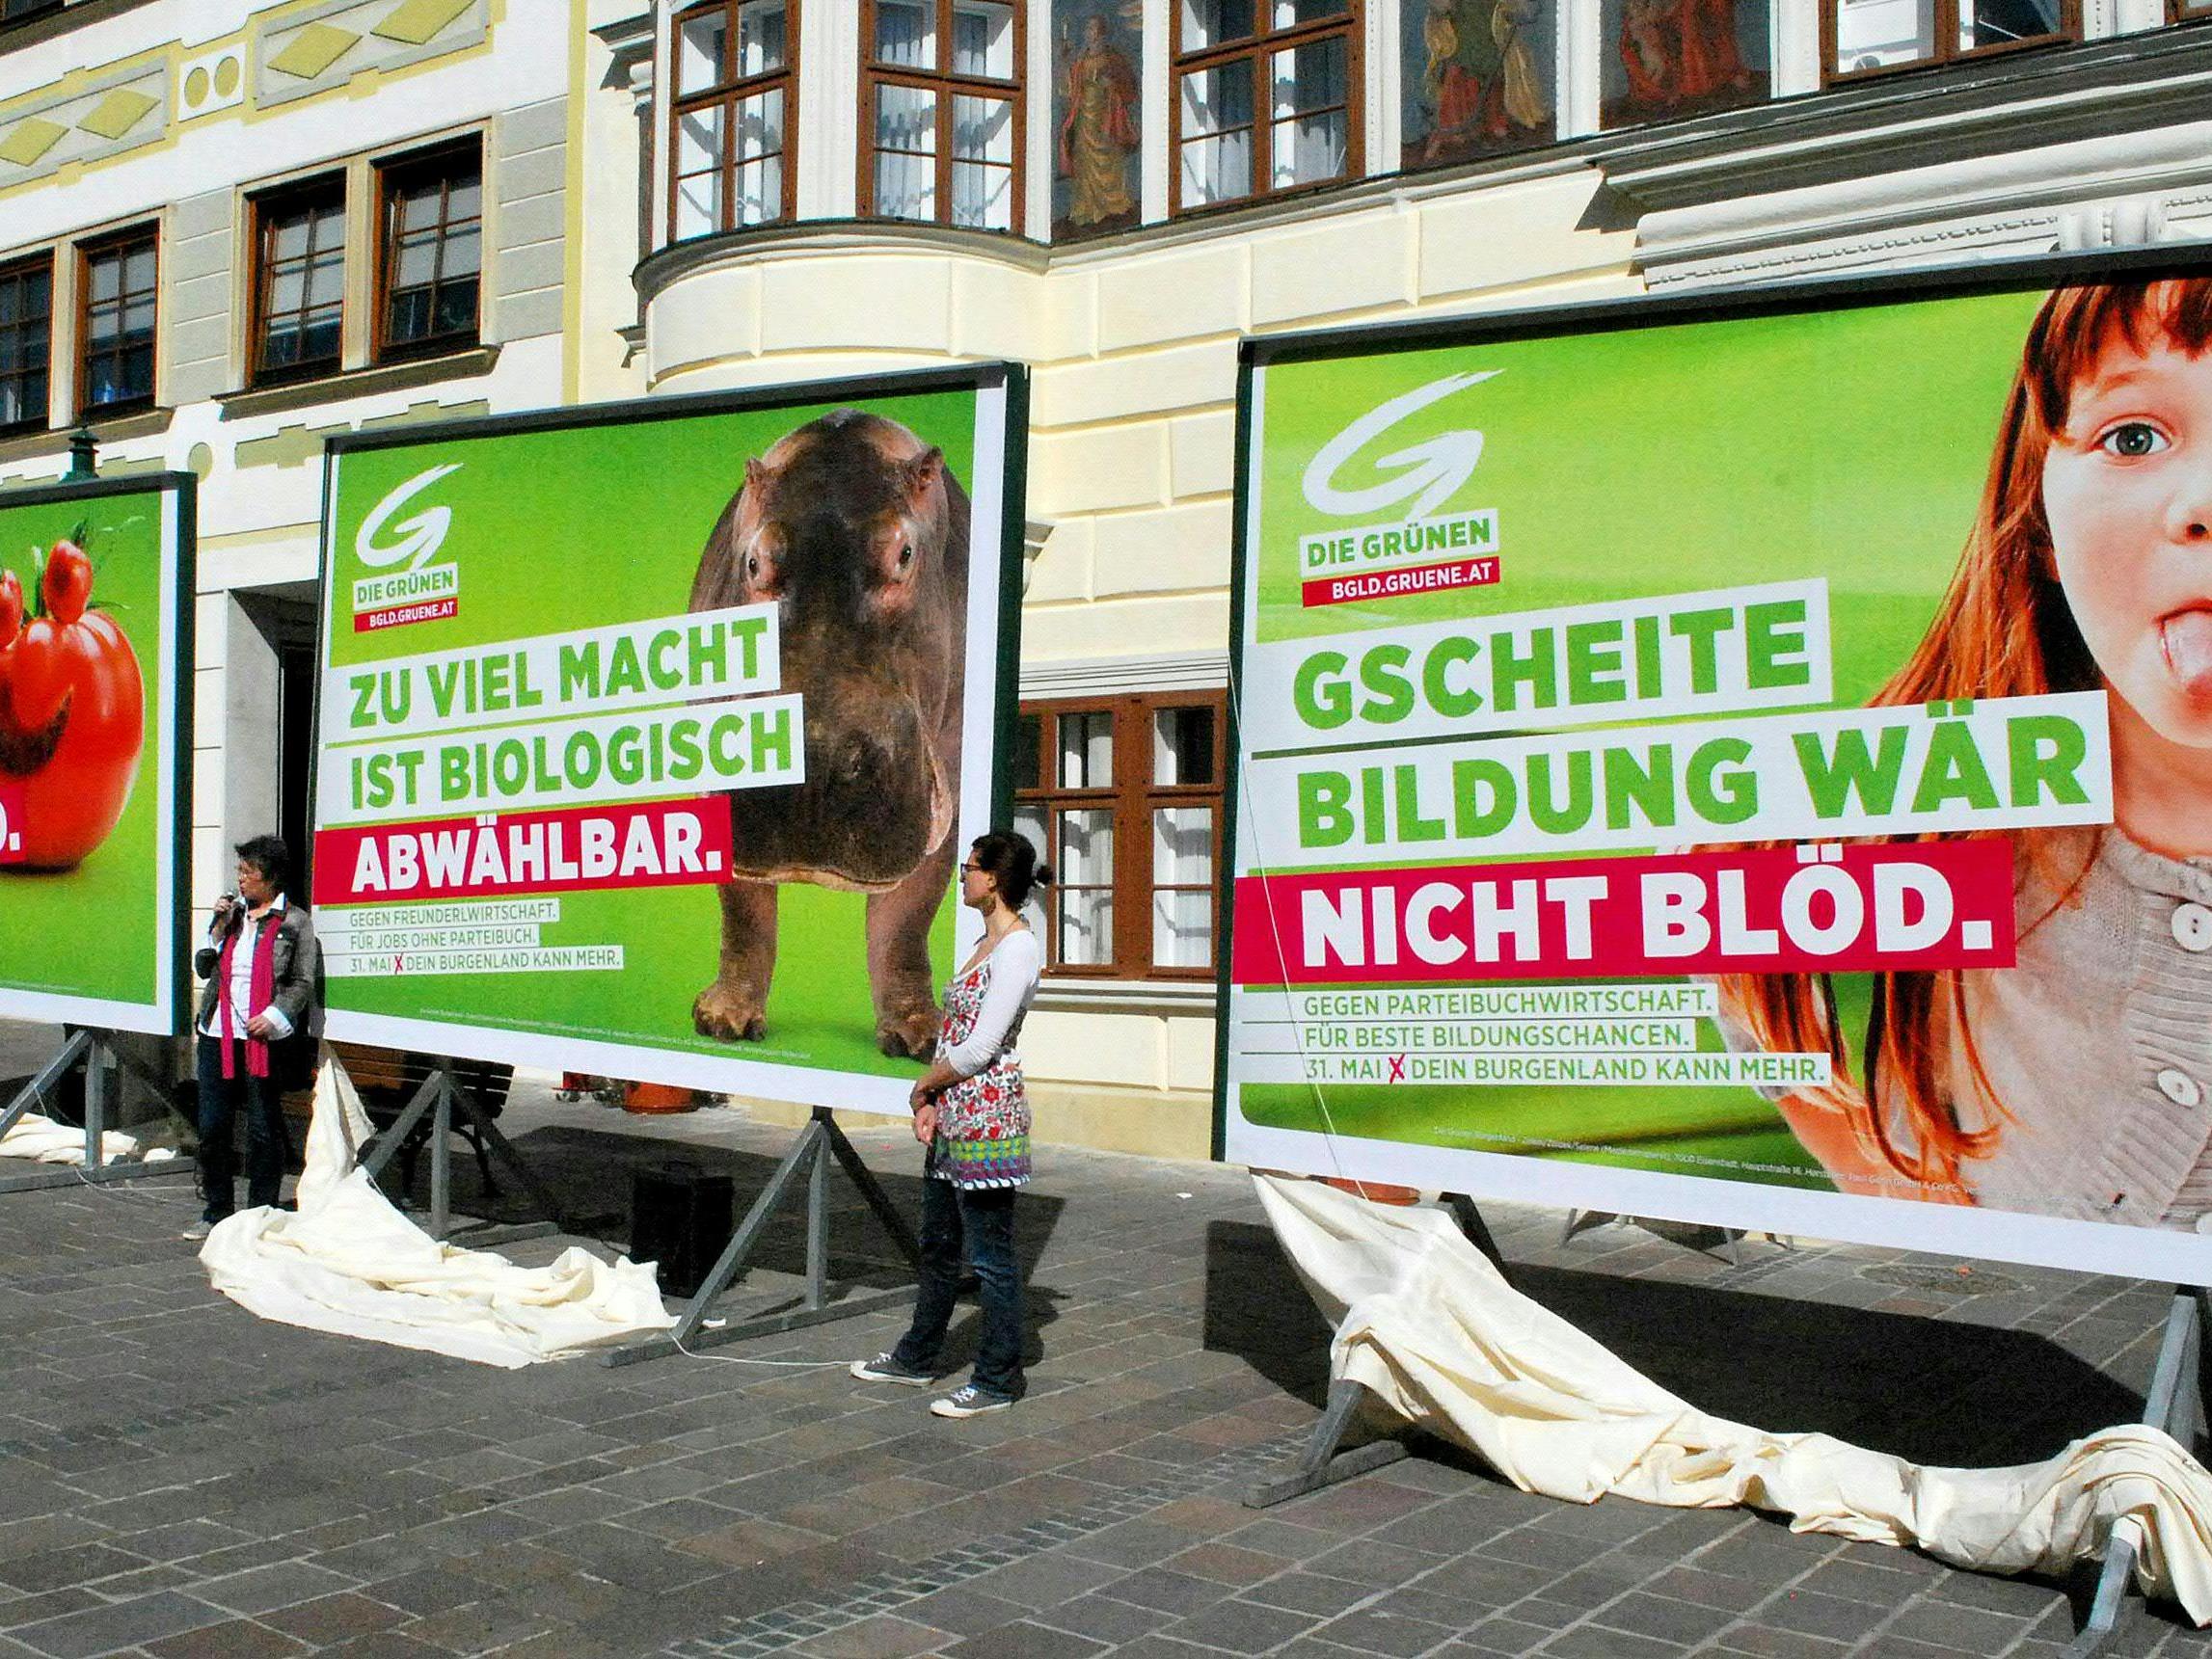 Die Grünen starten am 20. April mit dem Plakat-Wahlkampf im Burgenland.